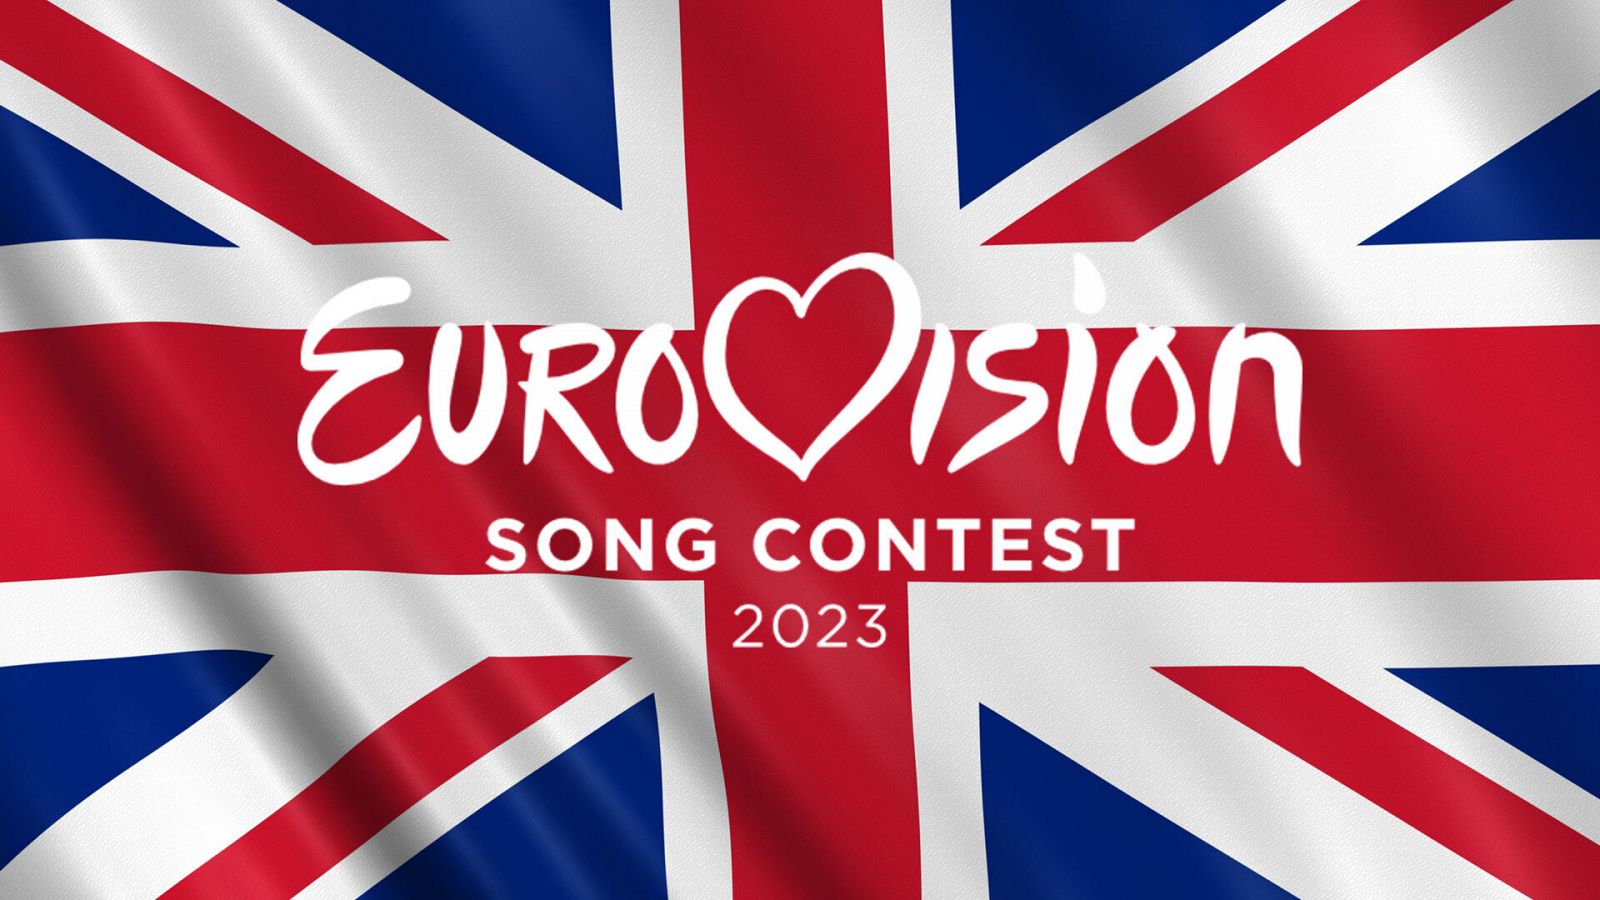 El festival de Eurovisión 2023 se celebrará en el Reino Unido, y no en Ucrania